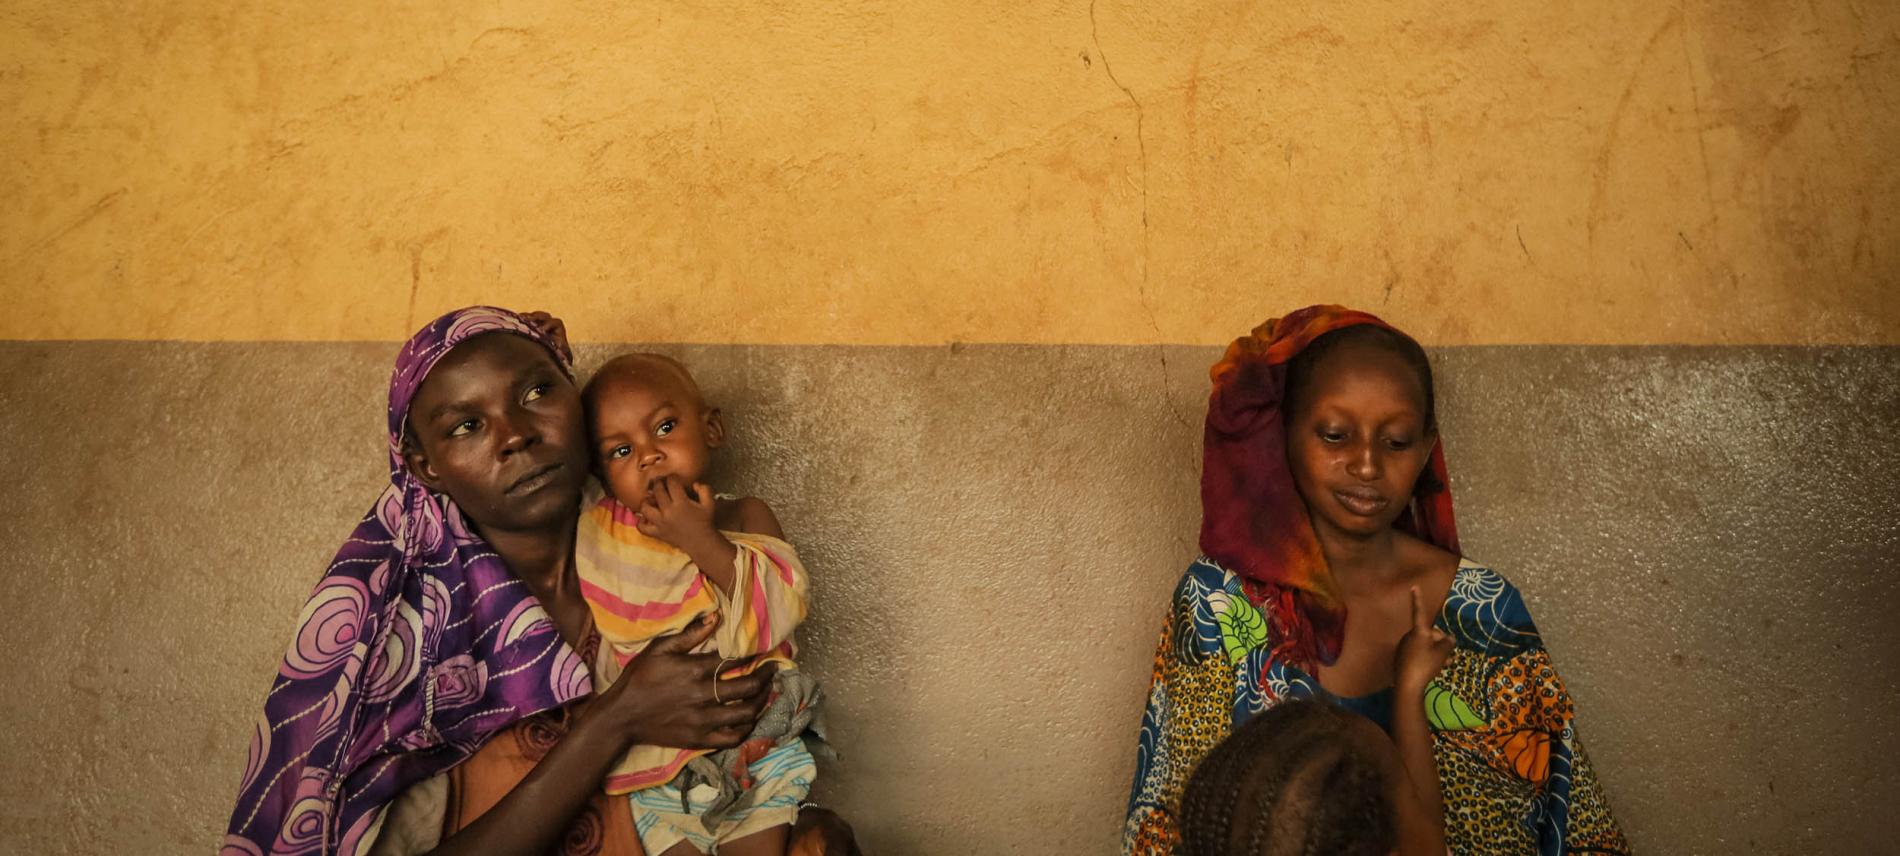 Das Ärzte der Welt-Projekt in Zentralafrika richtet sich besonders an Frauen und Kinder. Foto: Sébastien Duijndam